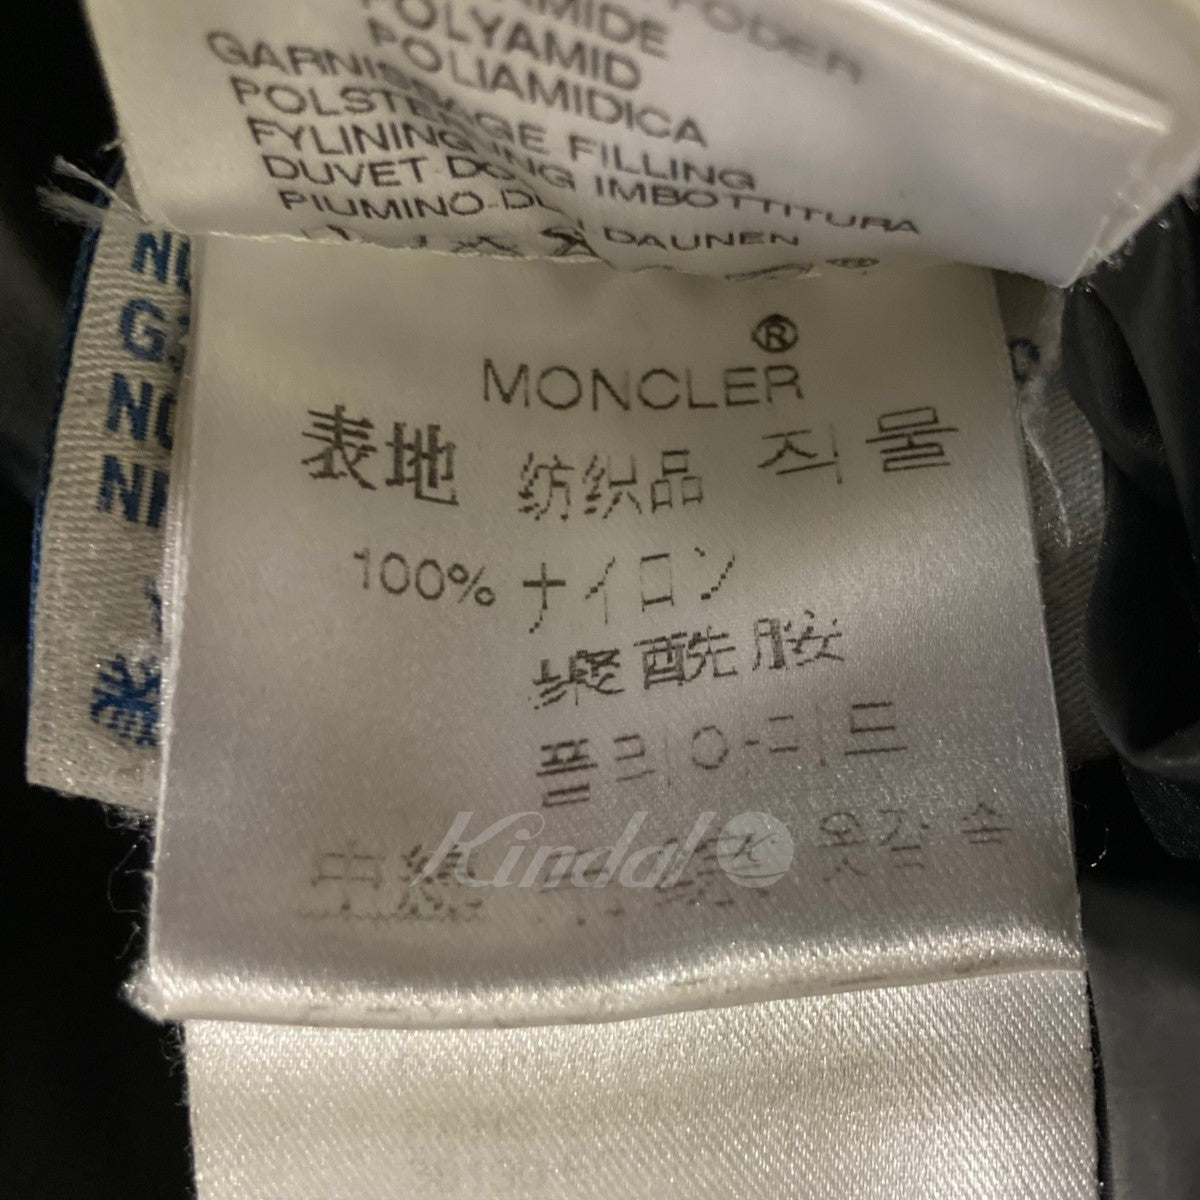 MONCLER(モンクレール) BEAMS別注 「EVEREST」カモフラ迷彩ダウン ...